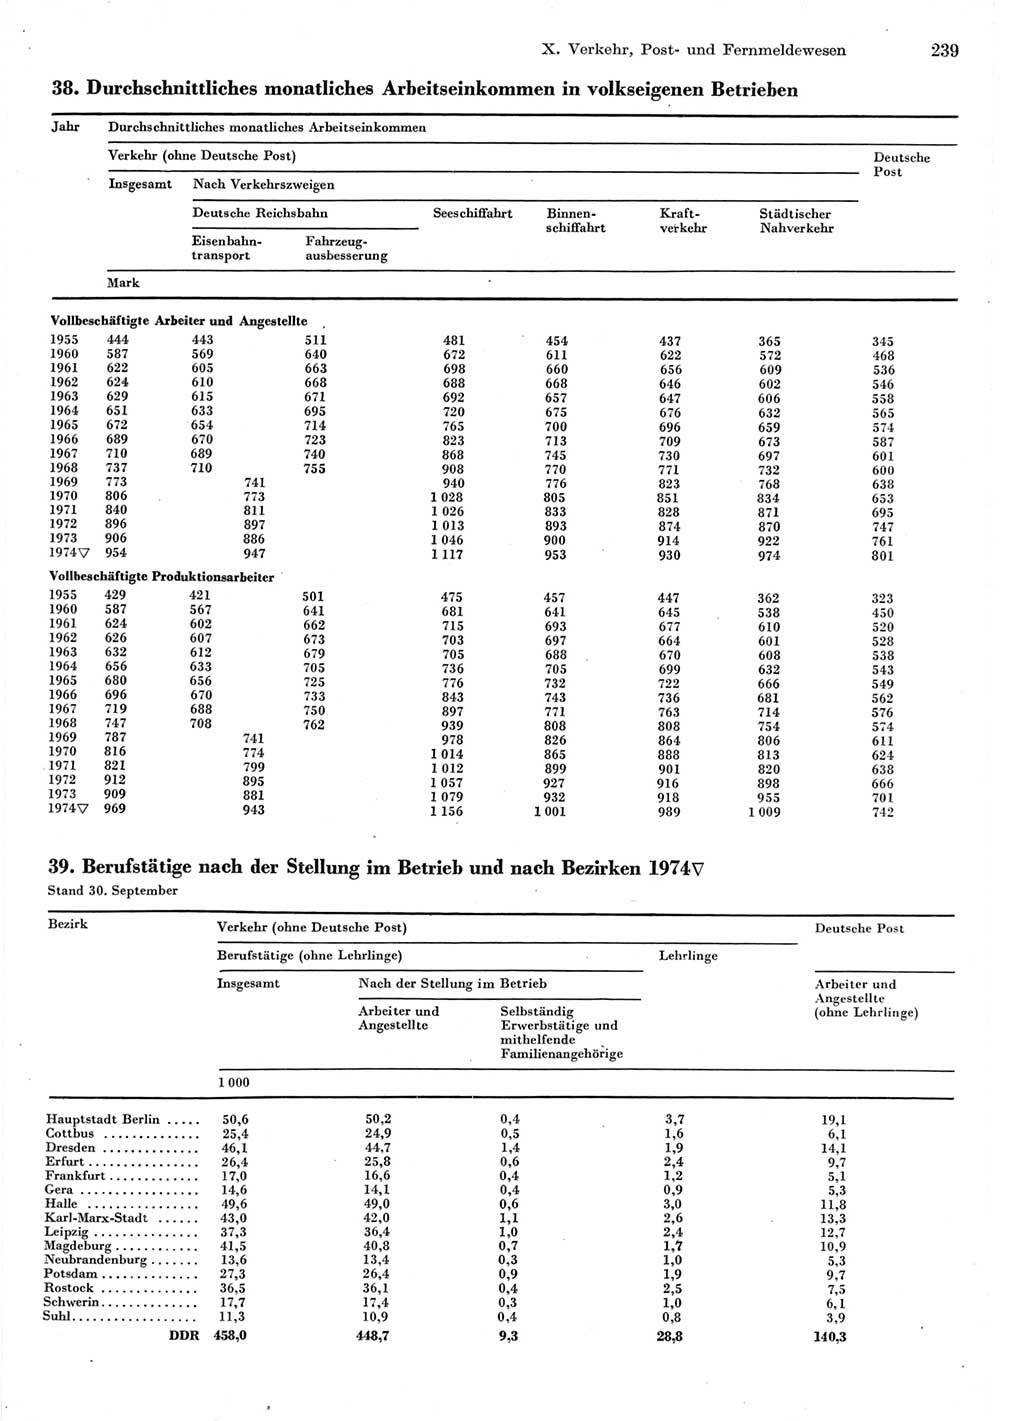 Statistisches Jahrbuch der Deutschen Demokratischen Republik (DDR) 1975, Seite 239 (Stat. Jb. DDR 1975, S. 239)